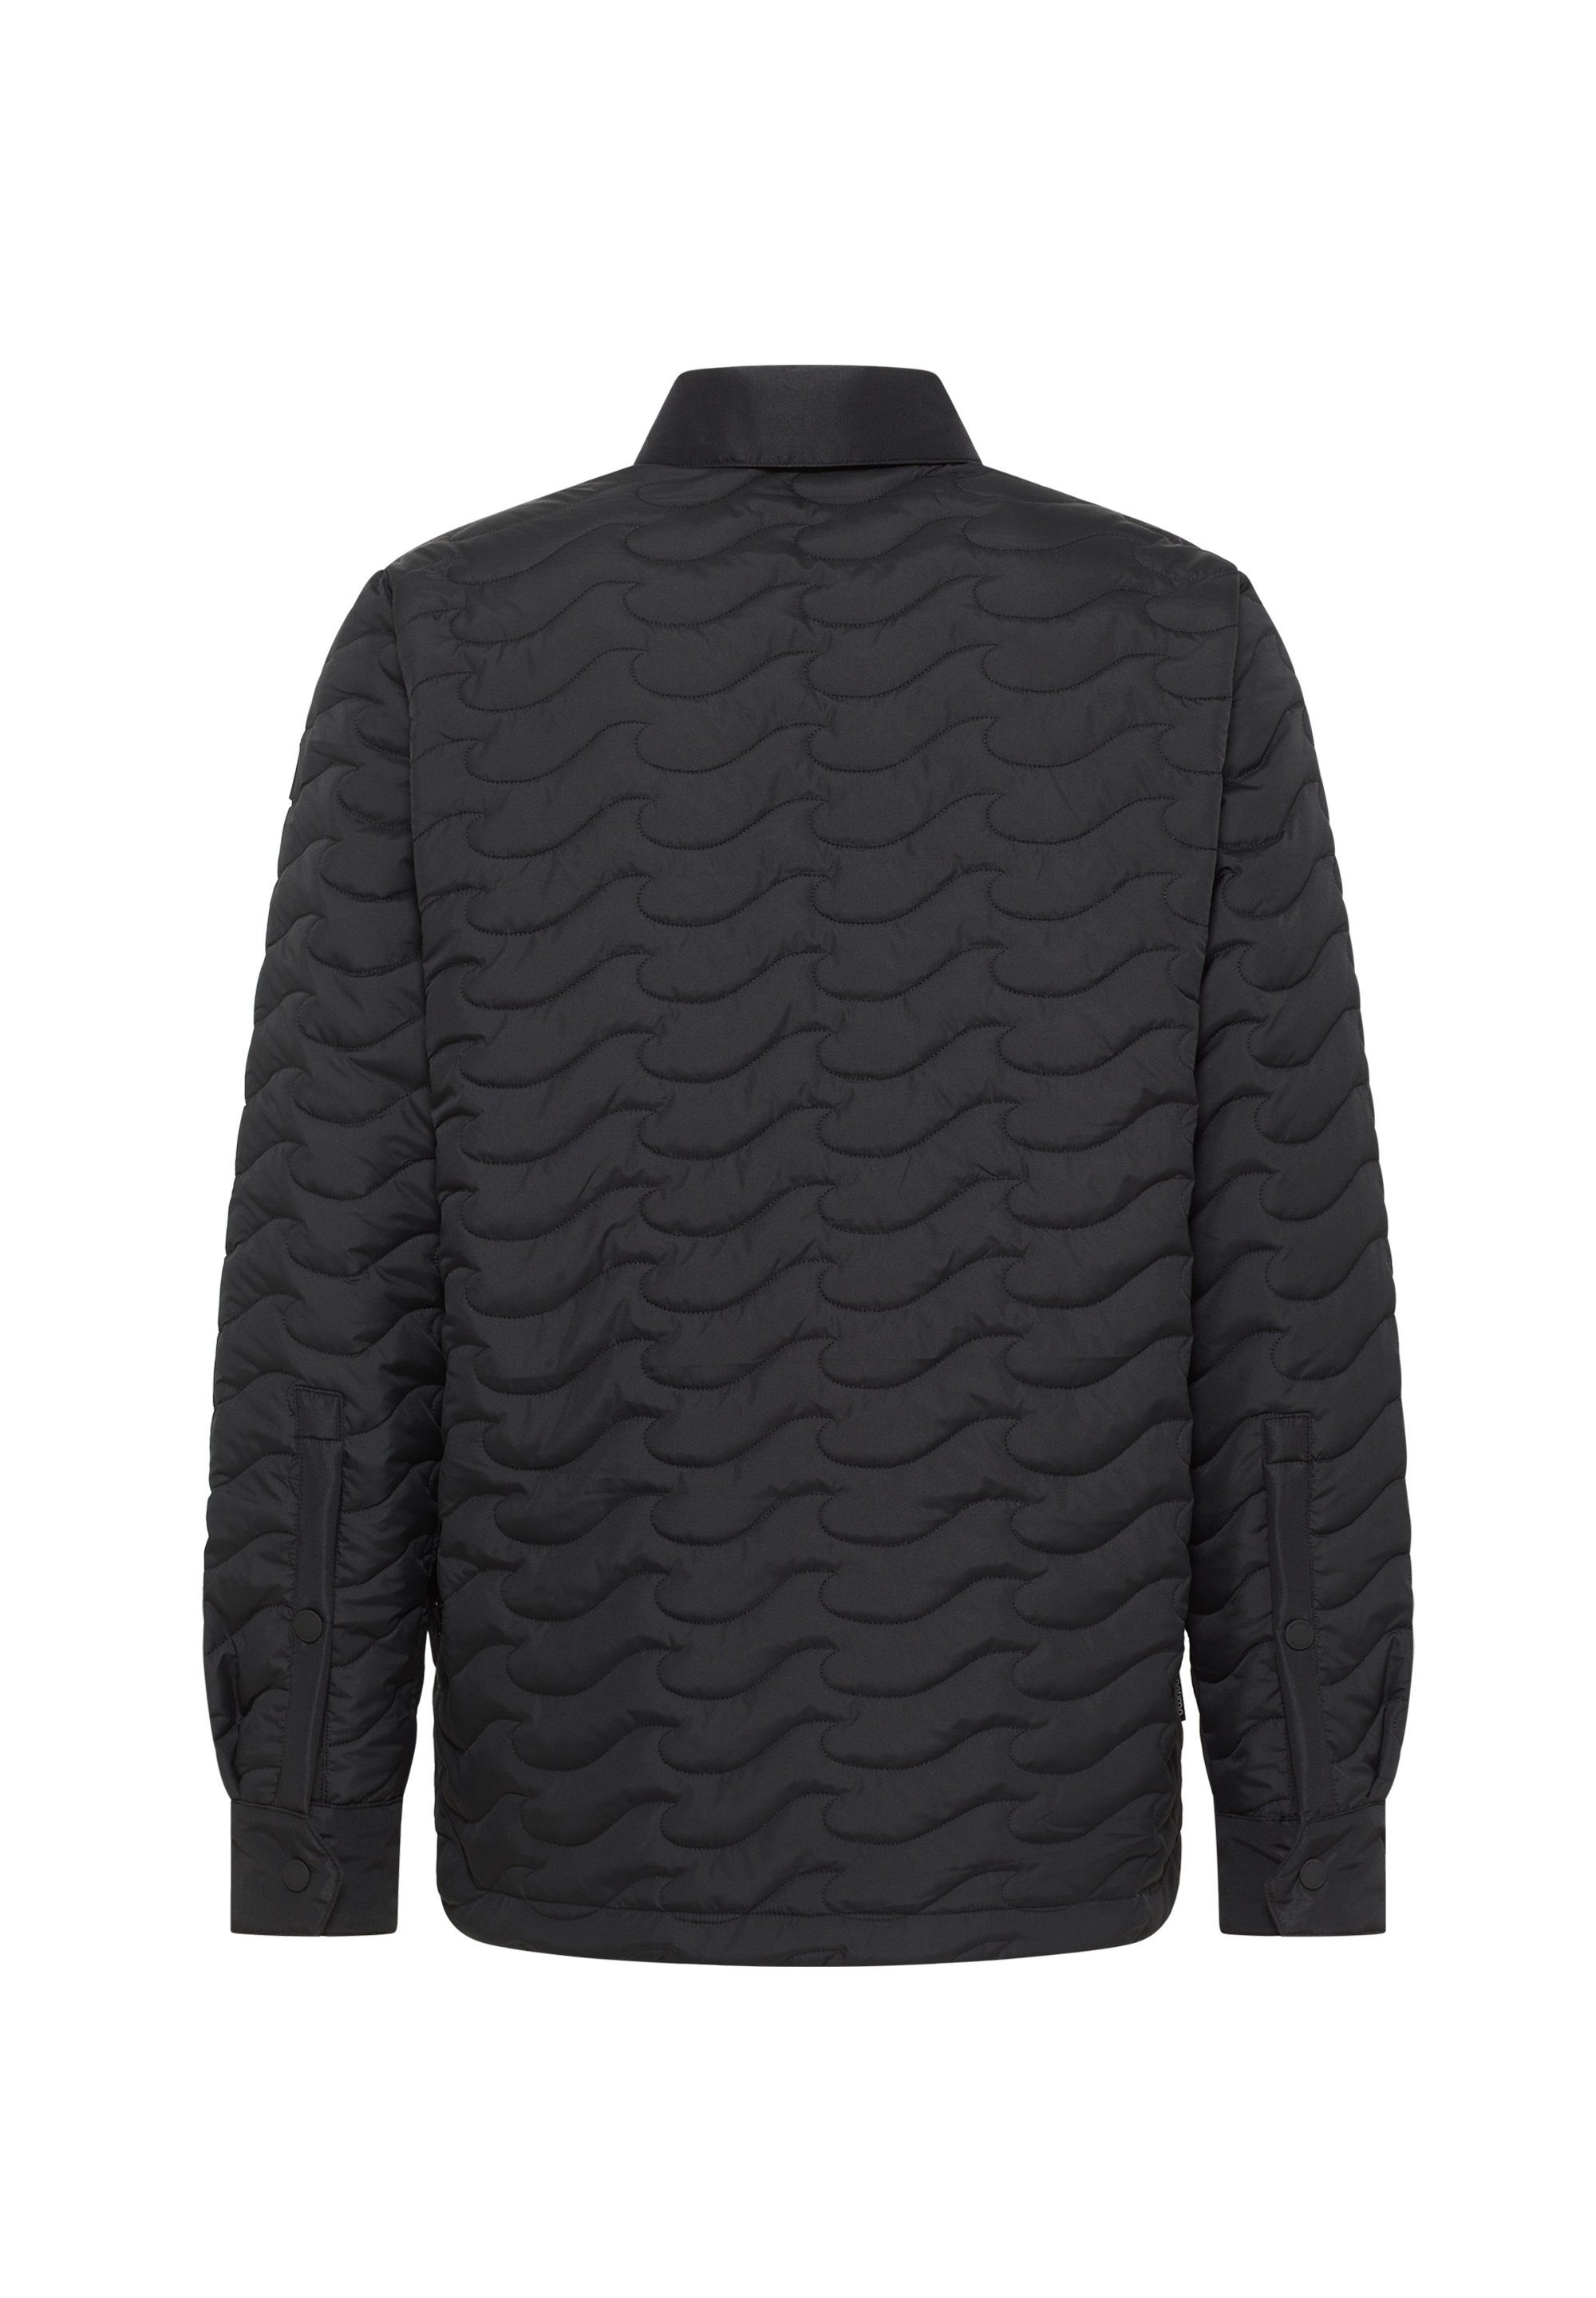 Insulated isolierten Mit und unserer Jacket Hemdjacke Pinetime Steppjacke sind New schwarz stilvoll gekleidet. Wave Sie warm Clothing